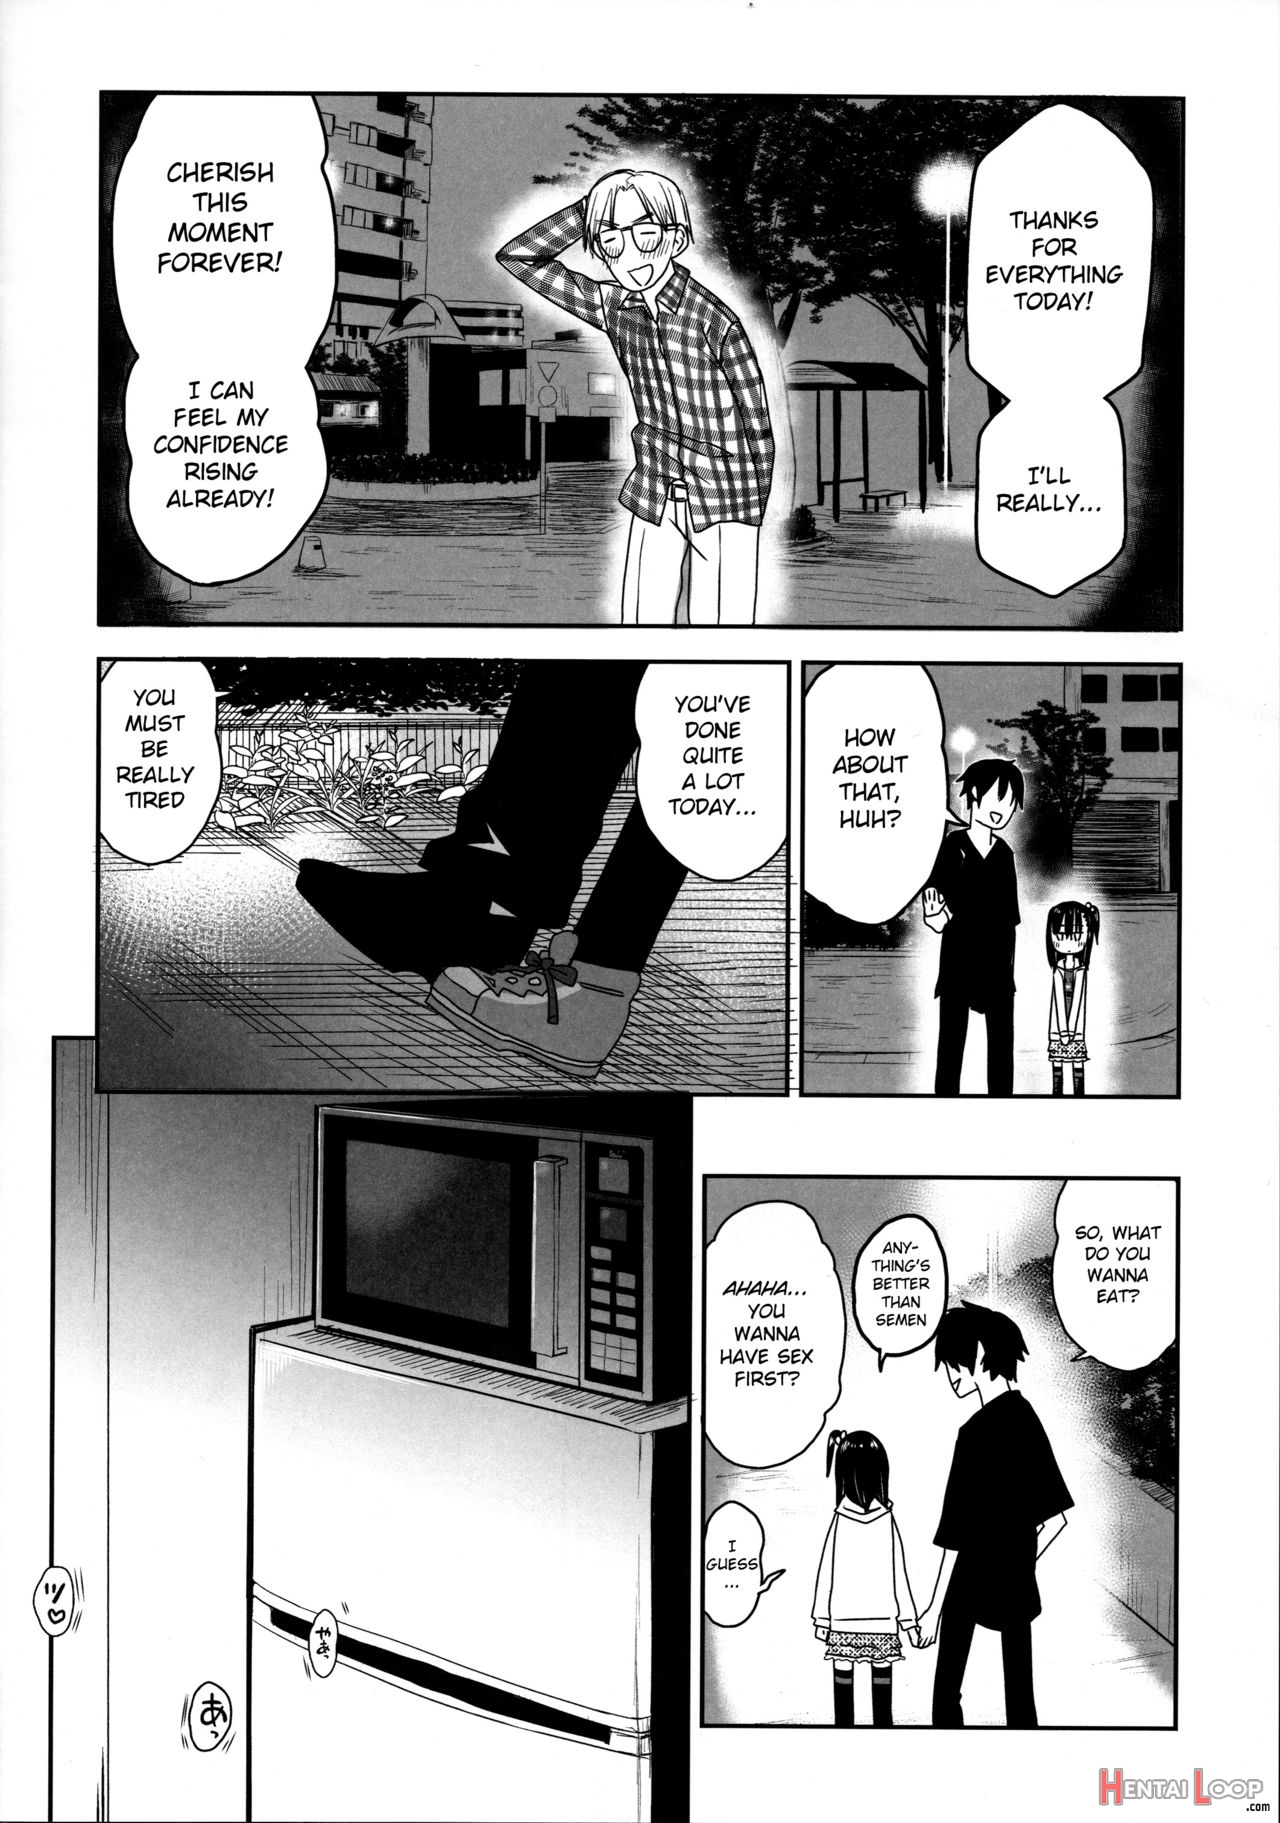 Tonari No Mako-chan Season 2 Vol. 2 page 32